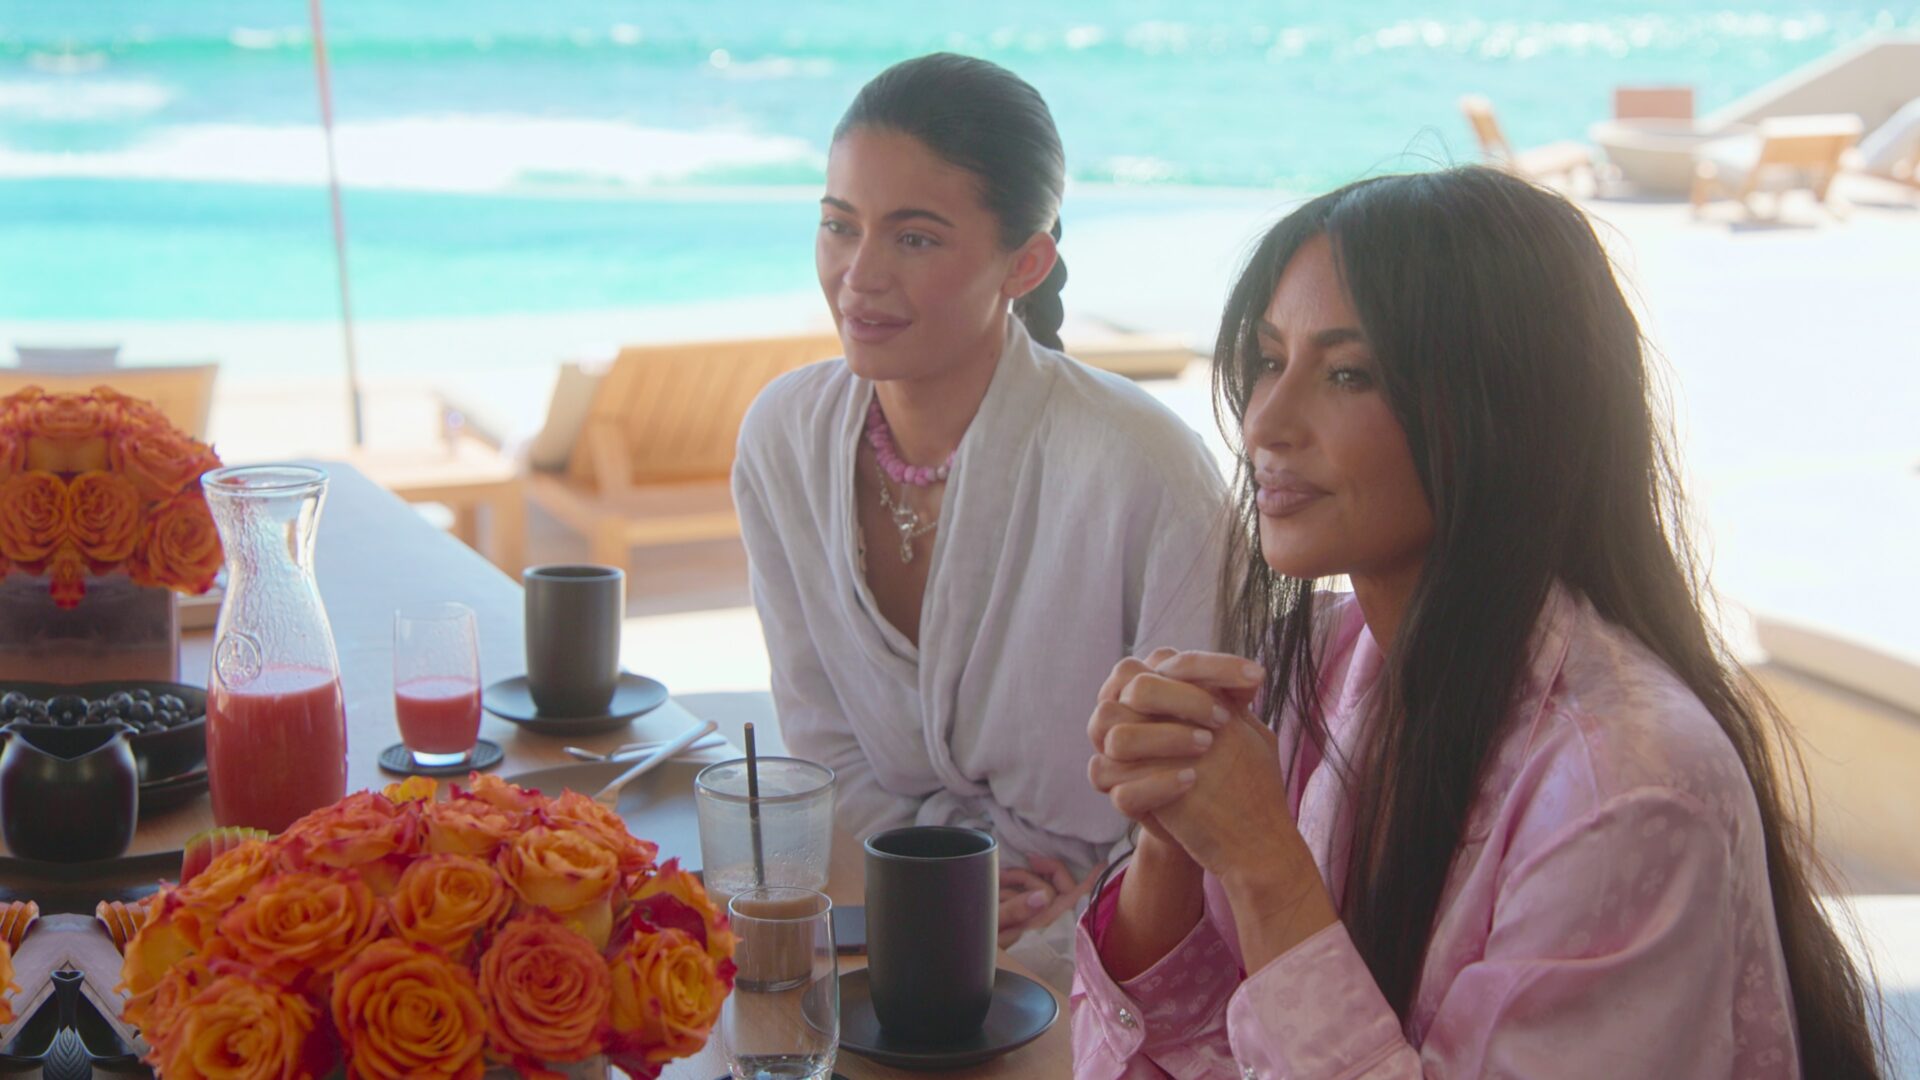 Kylie Jenner – The Kardashians | Season 4 Episode 1 | Kylie Jenner style